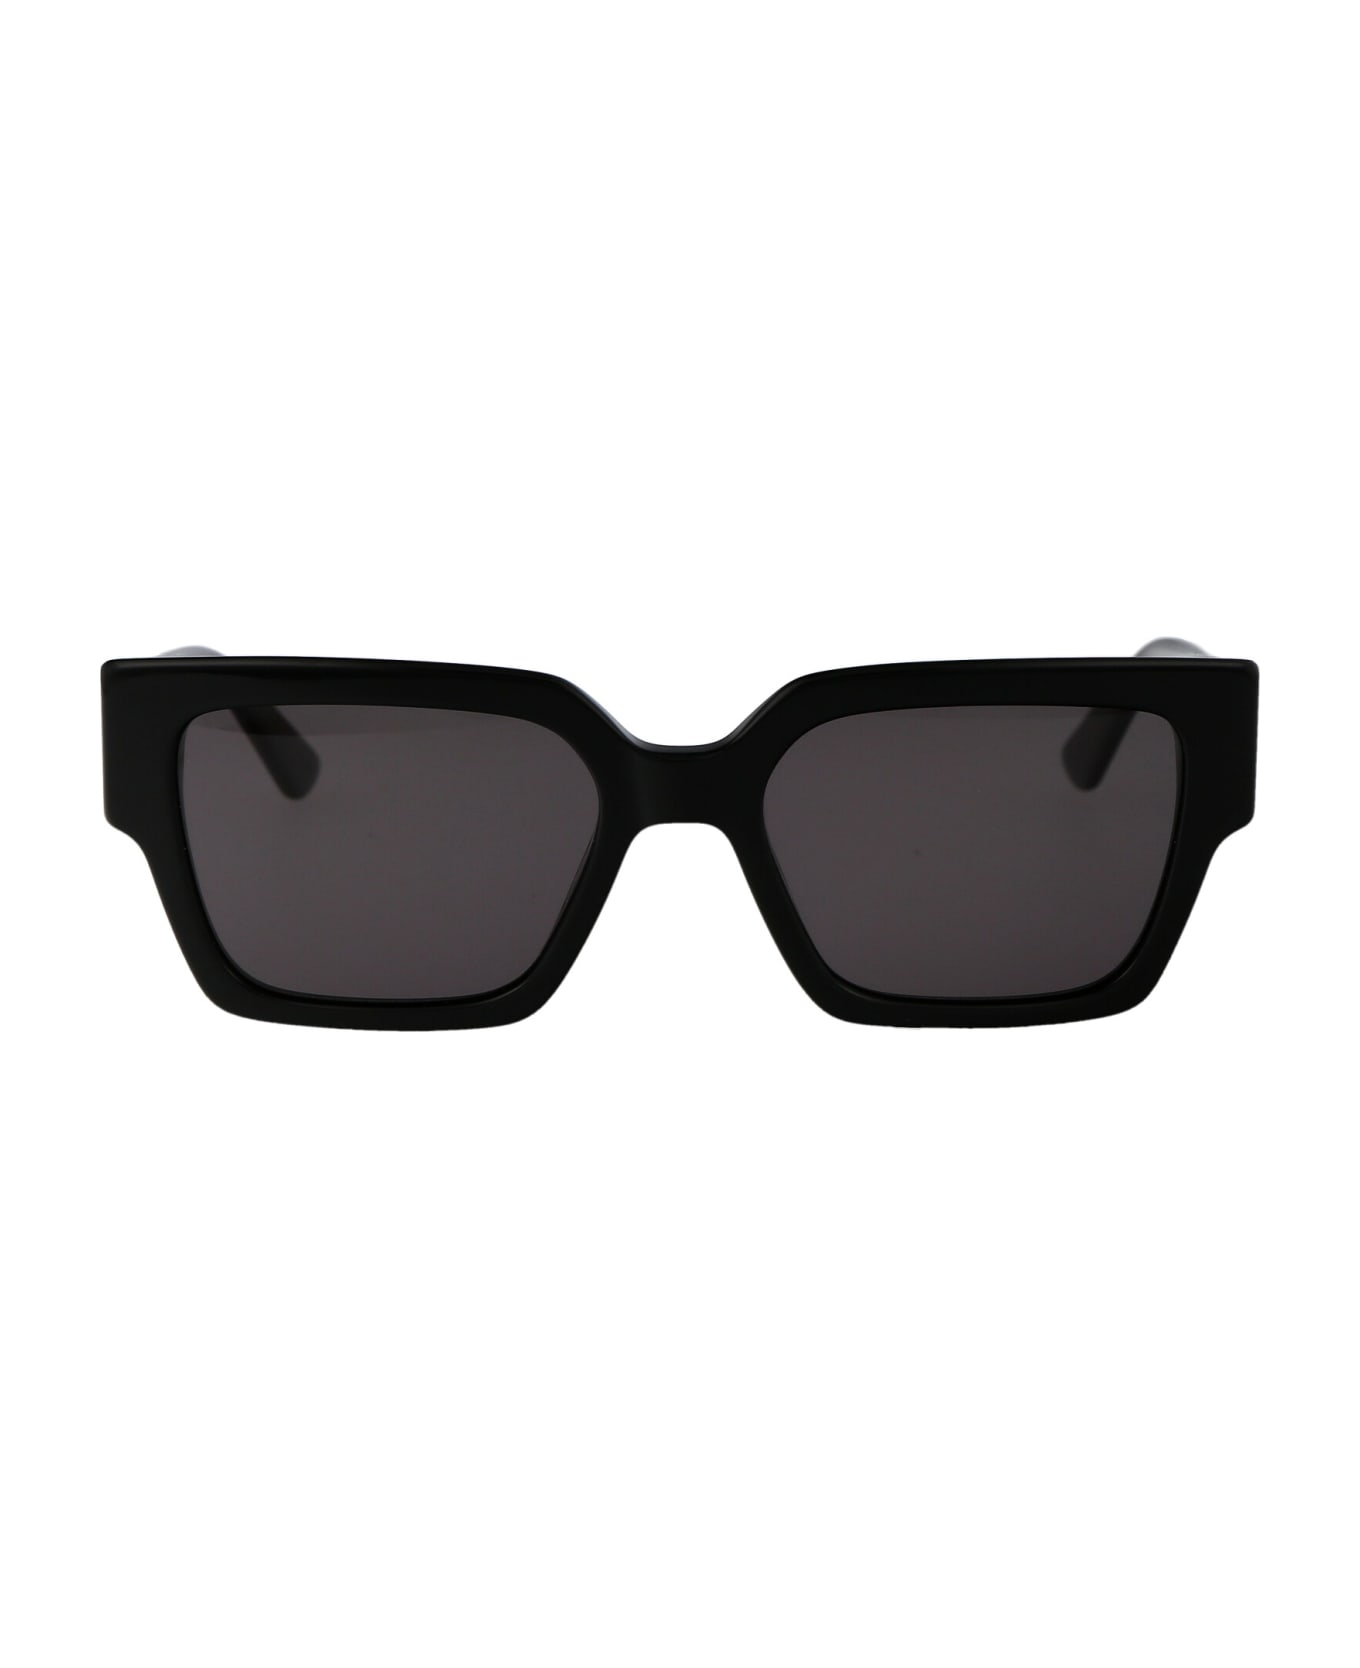 Karl Lagerfeld Kl6089s Sunglasses - 001 BLACK